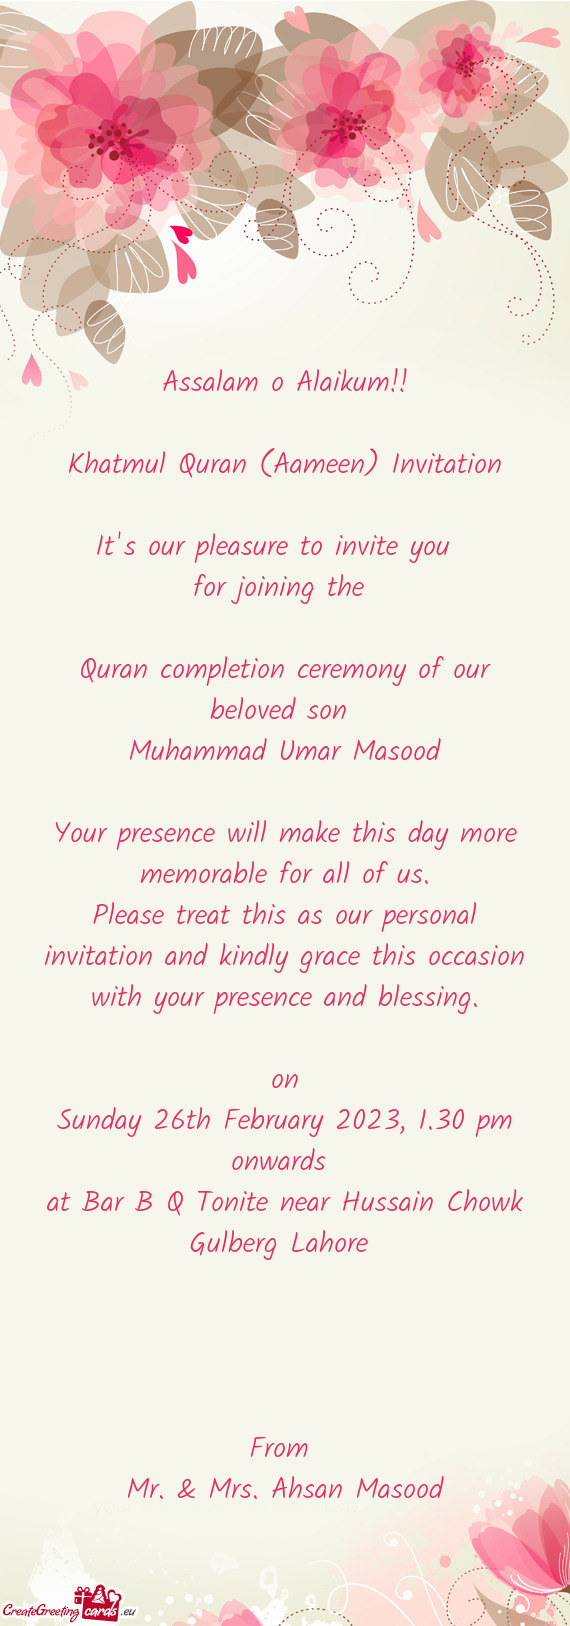 Khatmul Quran (Aameen) Invitation